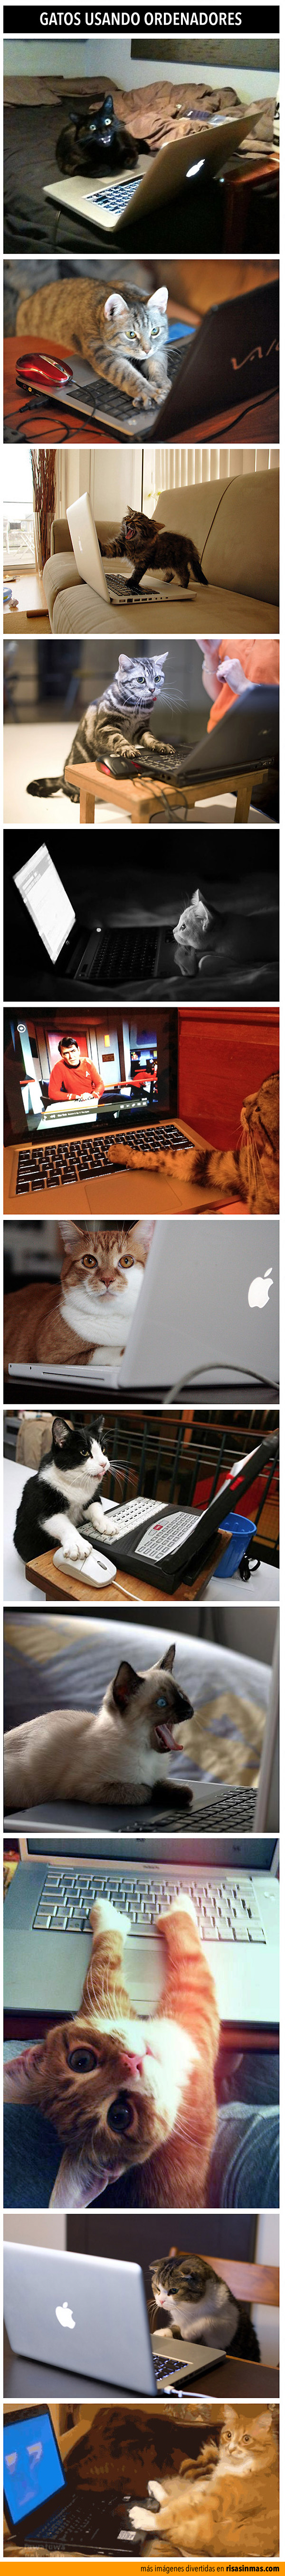 Gatos usando ordenadores